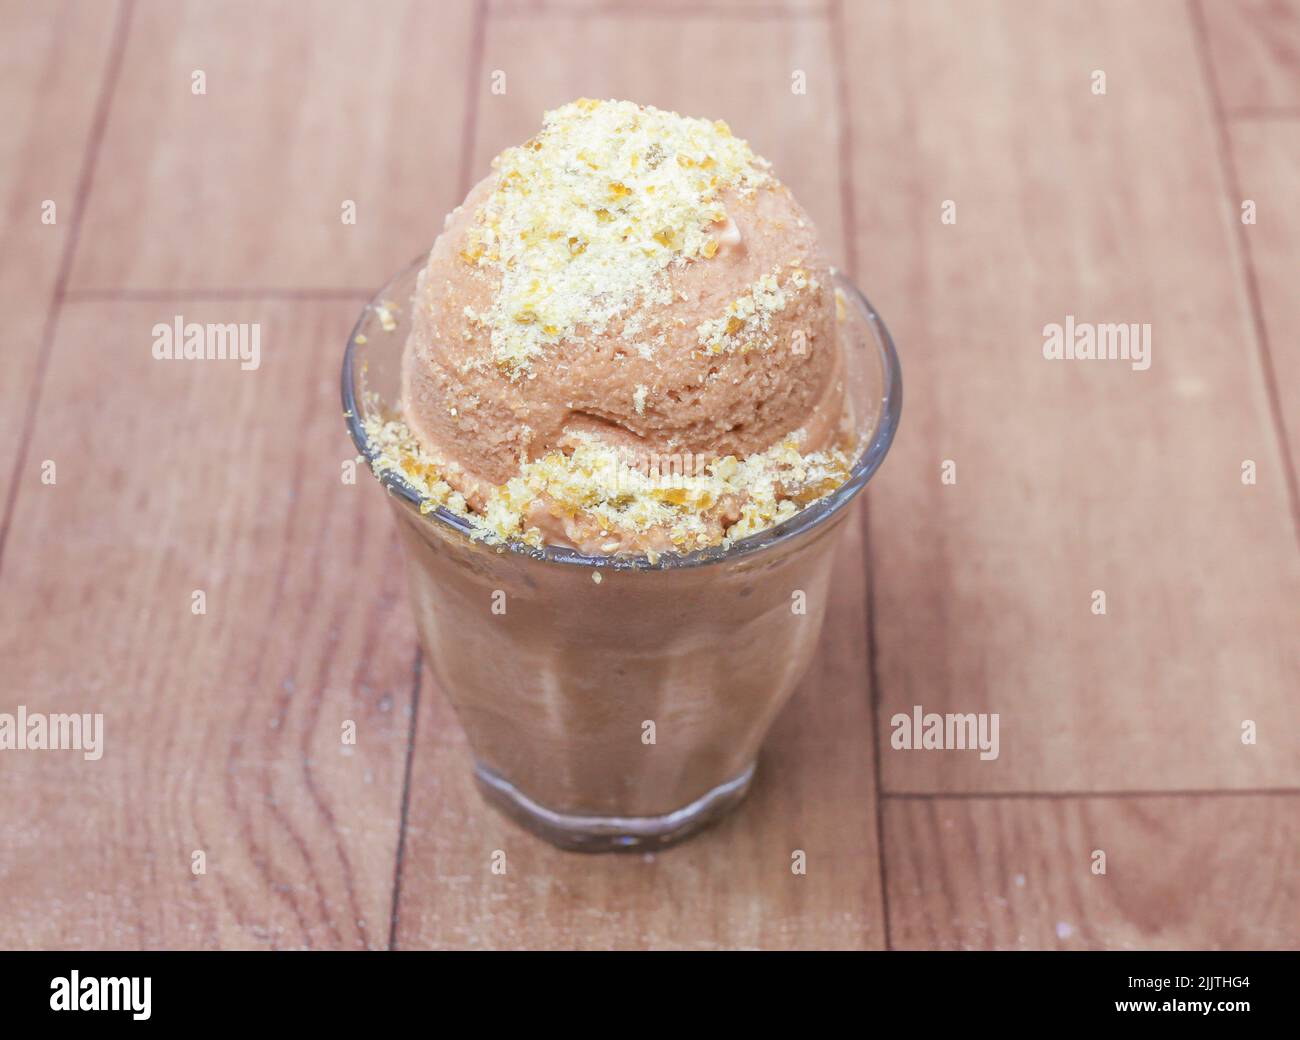 Una porción de delicioso helado de café sobre una superficie de madera Foto de stock